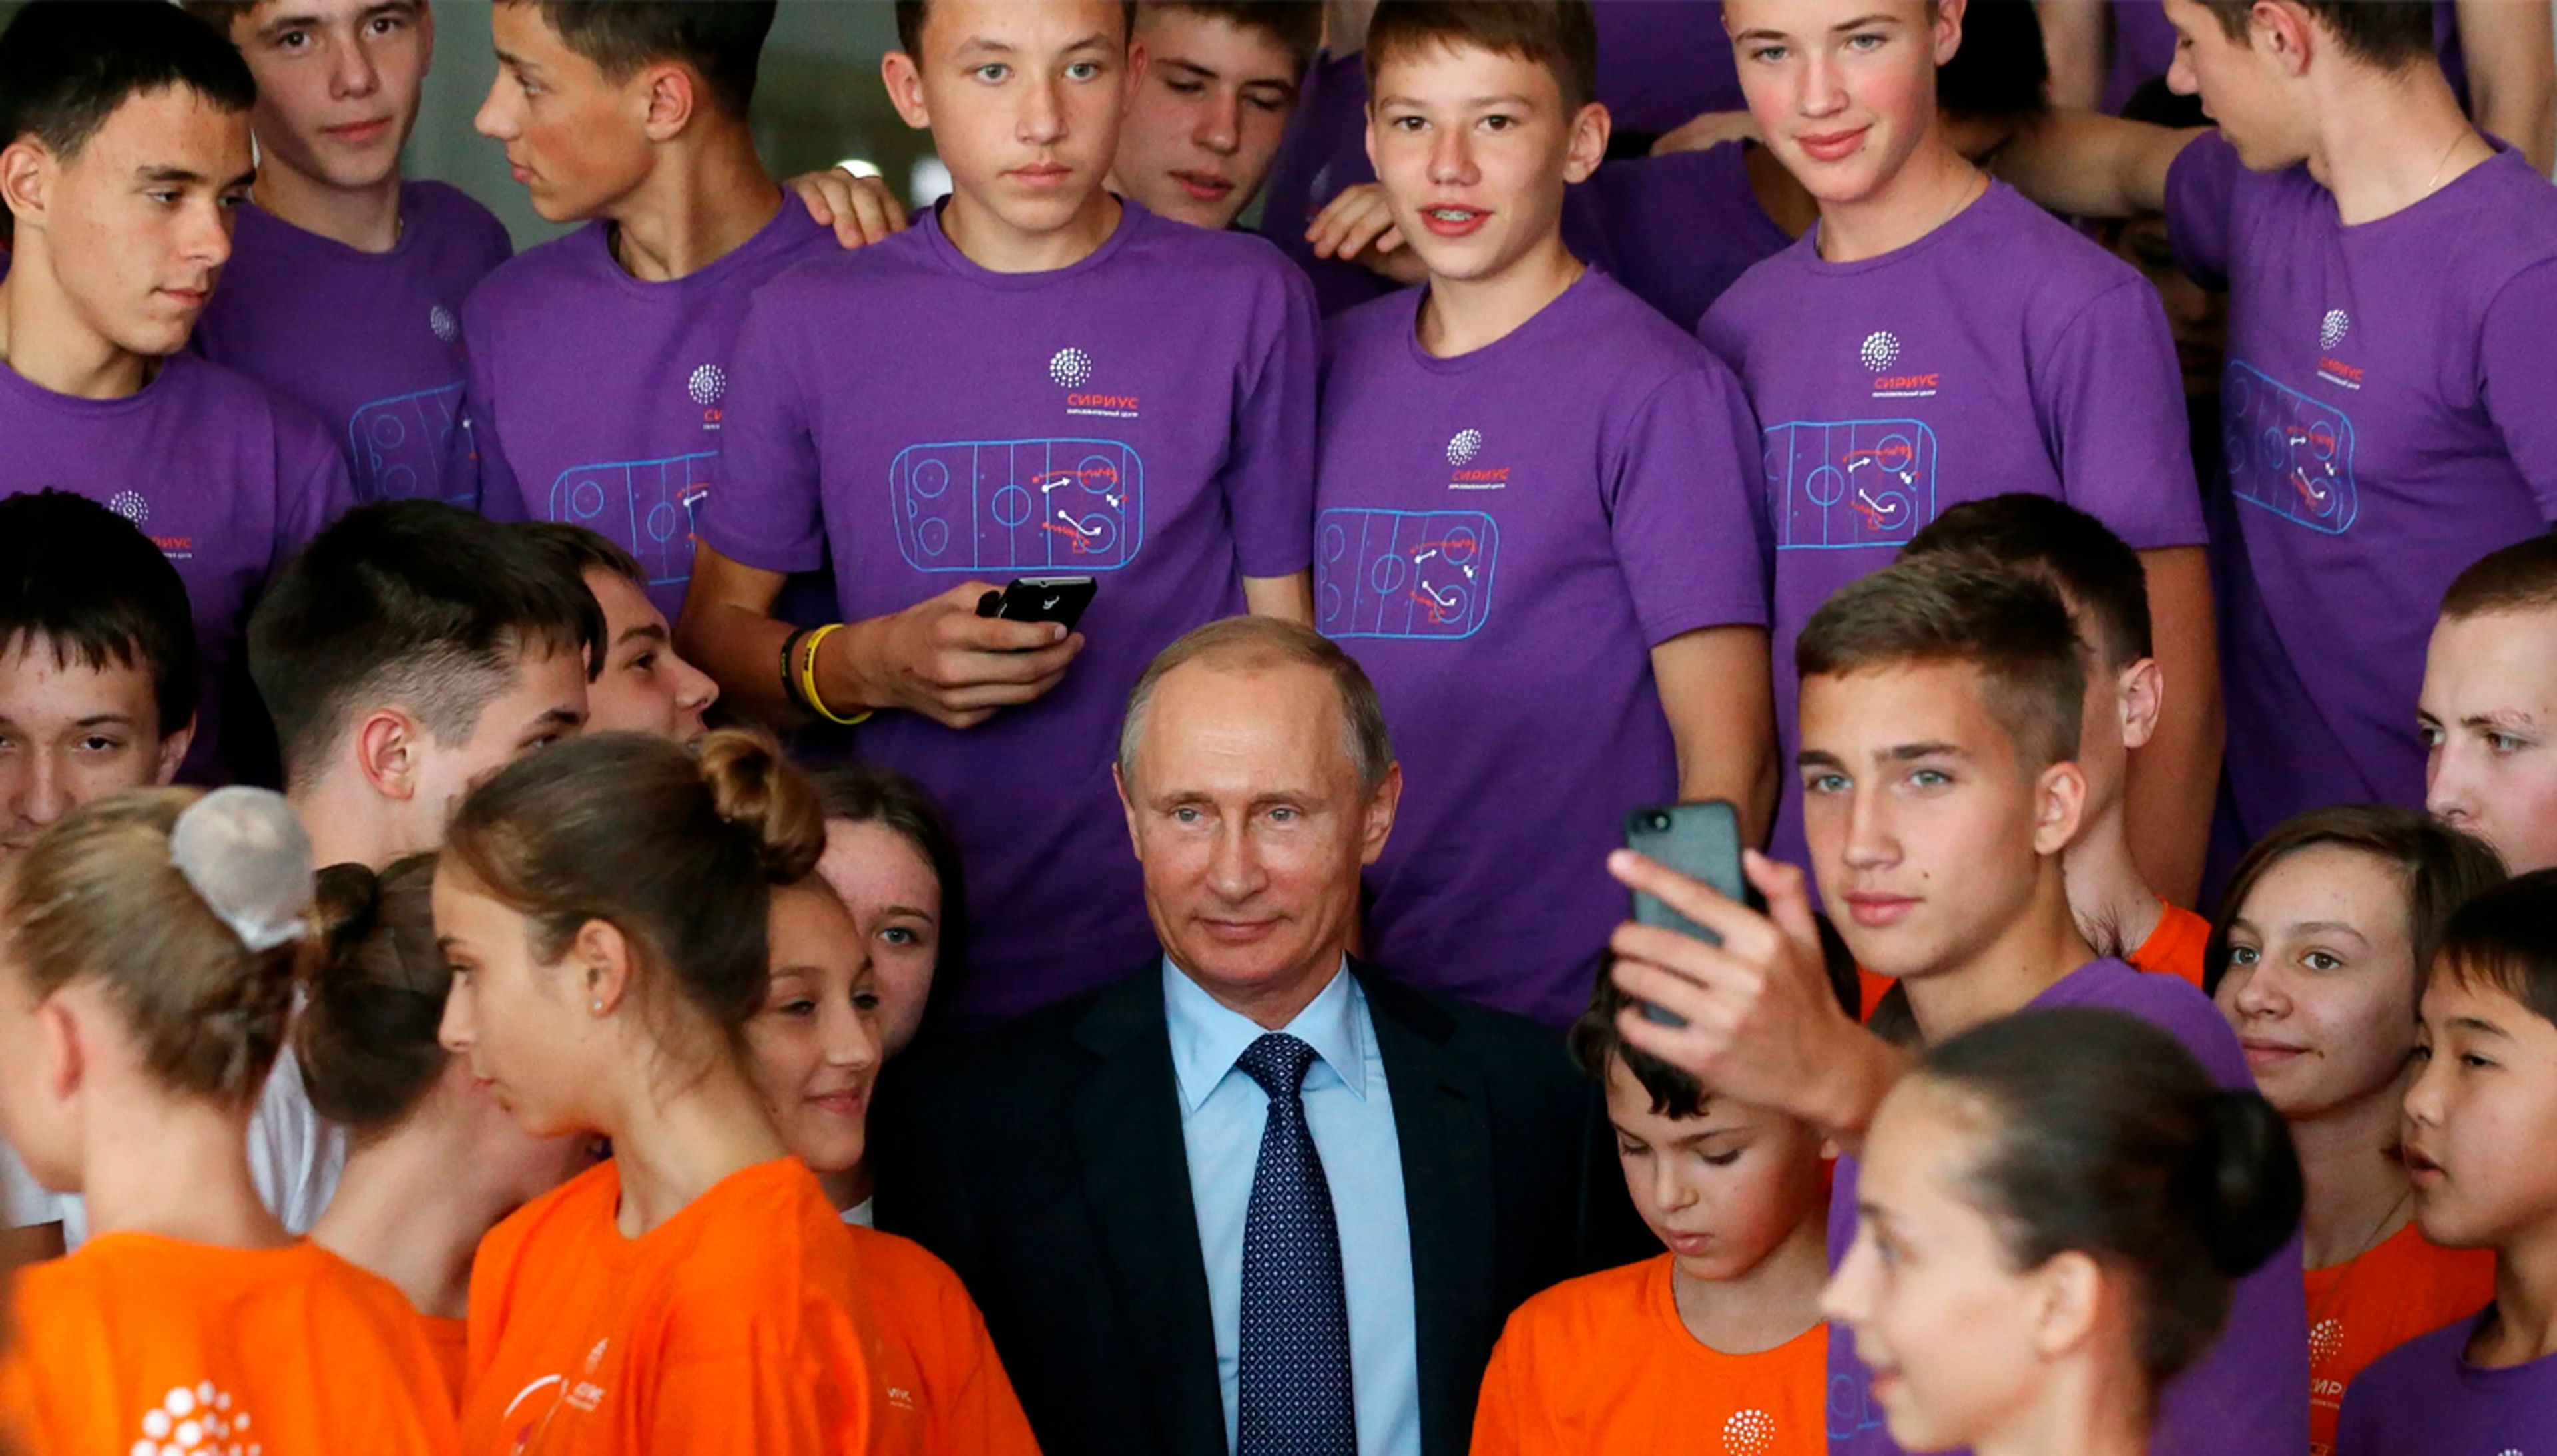 Putin posa con estudiantes durante una reunión para el Concurso Maestro del Año de Rusia en el centro de educación infantil Sirius el 8 de octubre de 2015 en Sochi, Rusia.